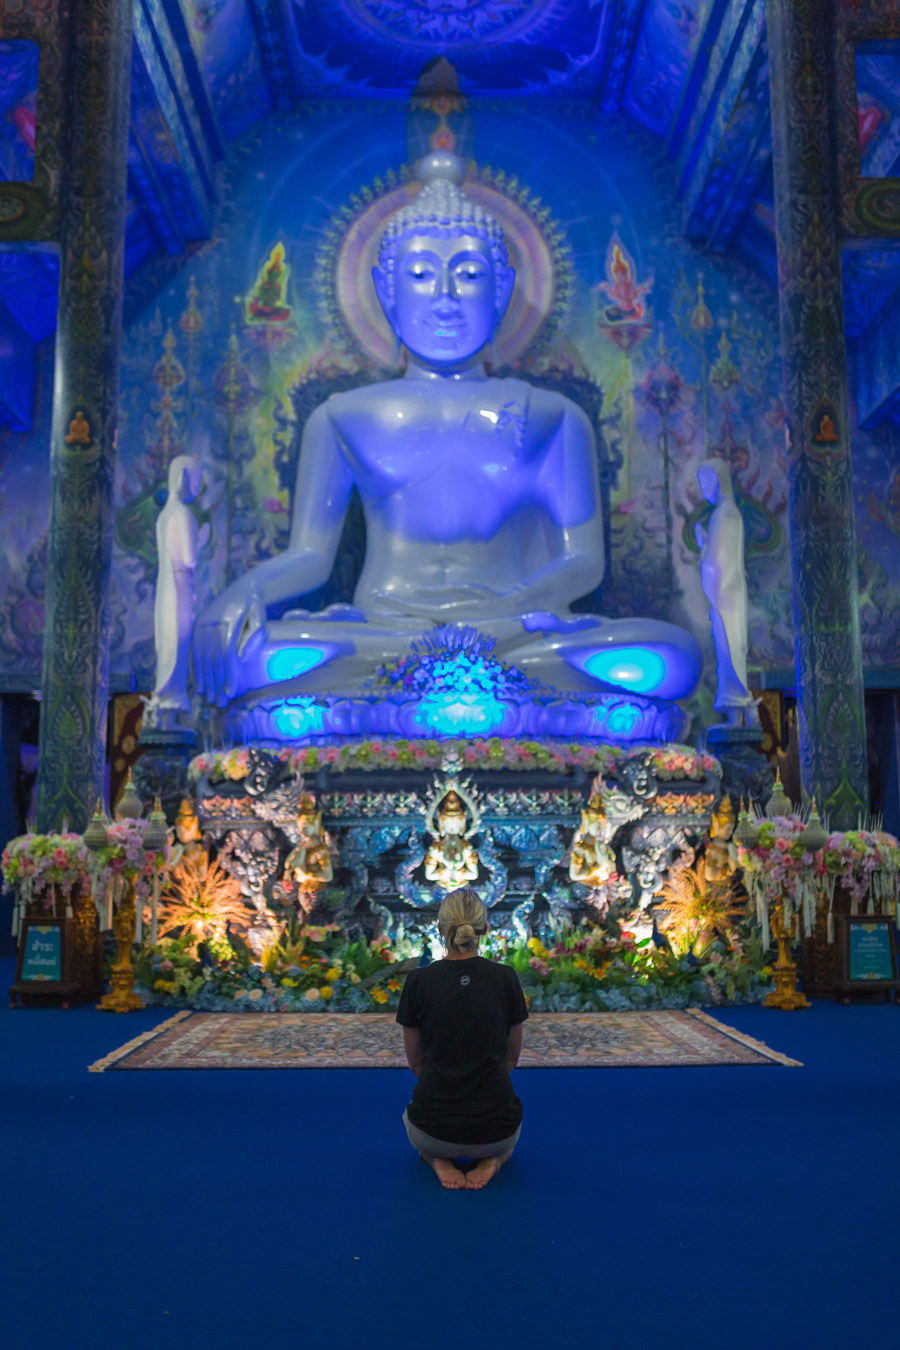 Chiang Rai Thailand - Blauer Tempel